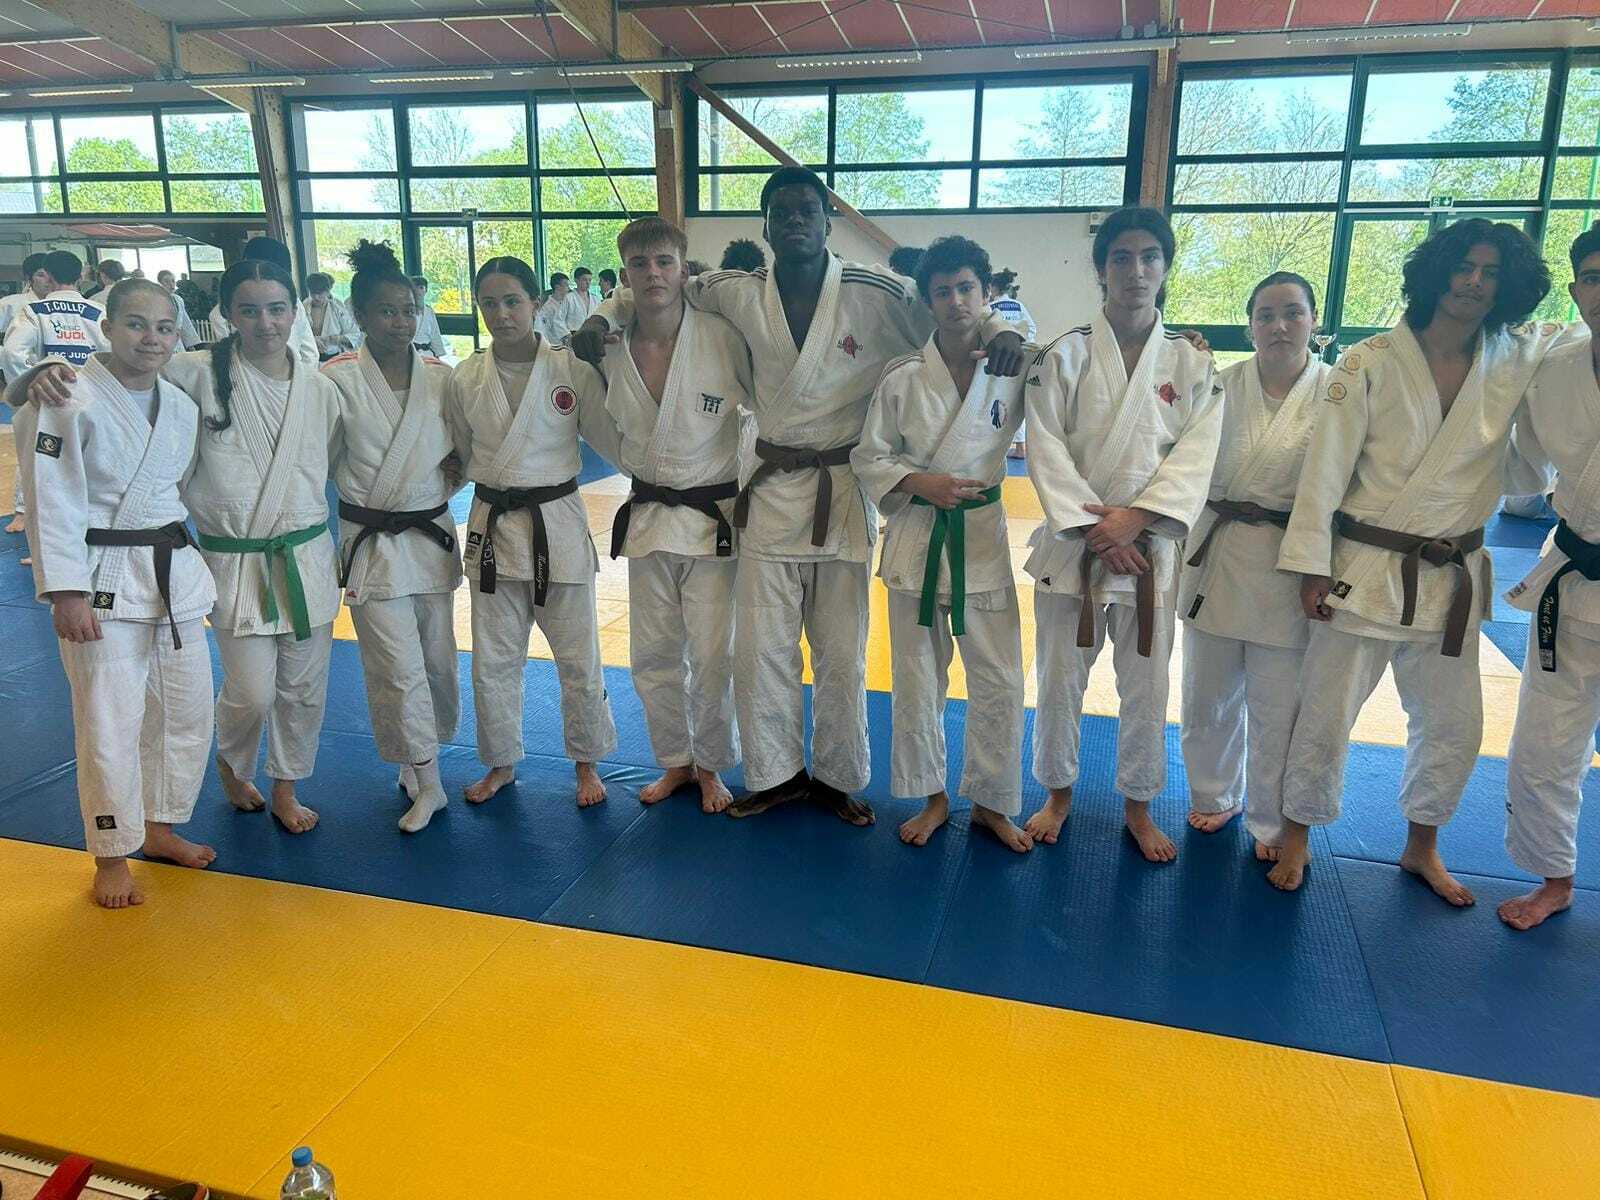 L'équipe cadettes de l'ALM Judo au championnat de France !